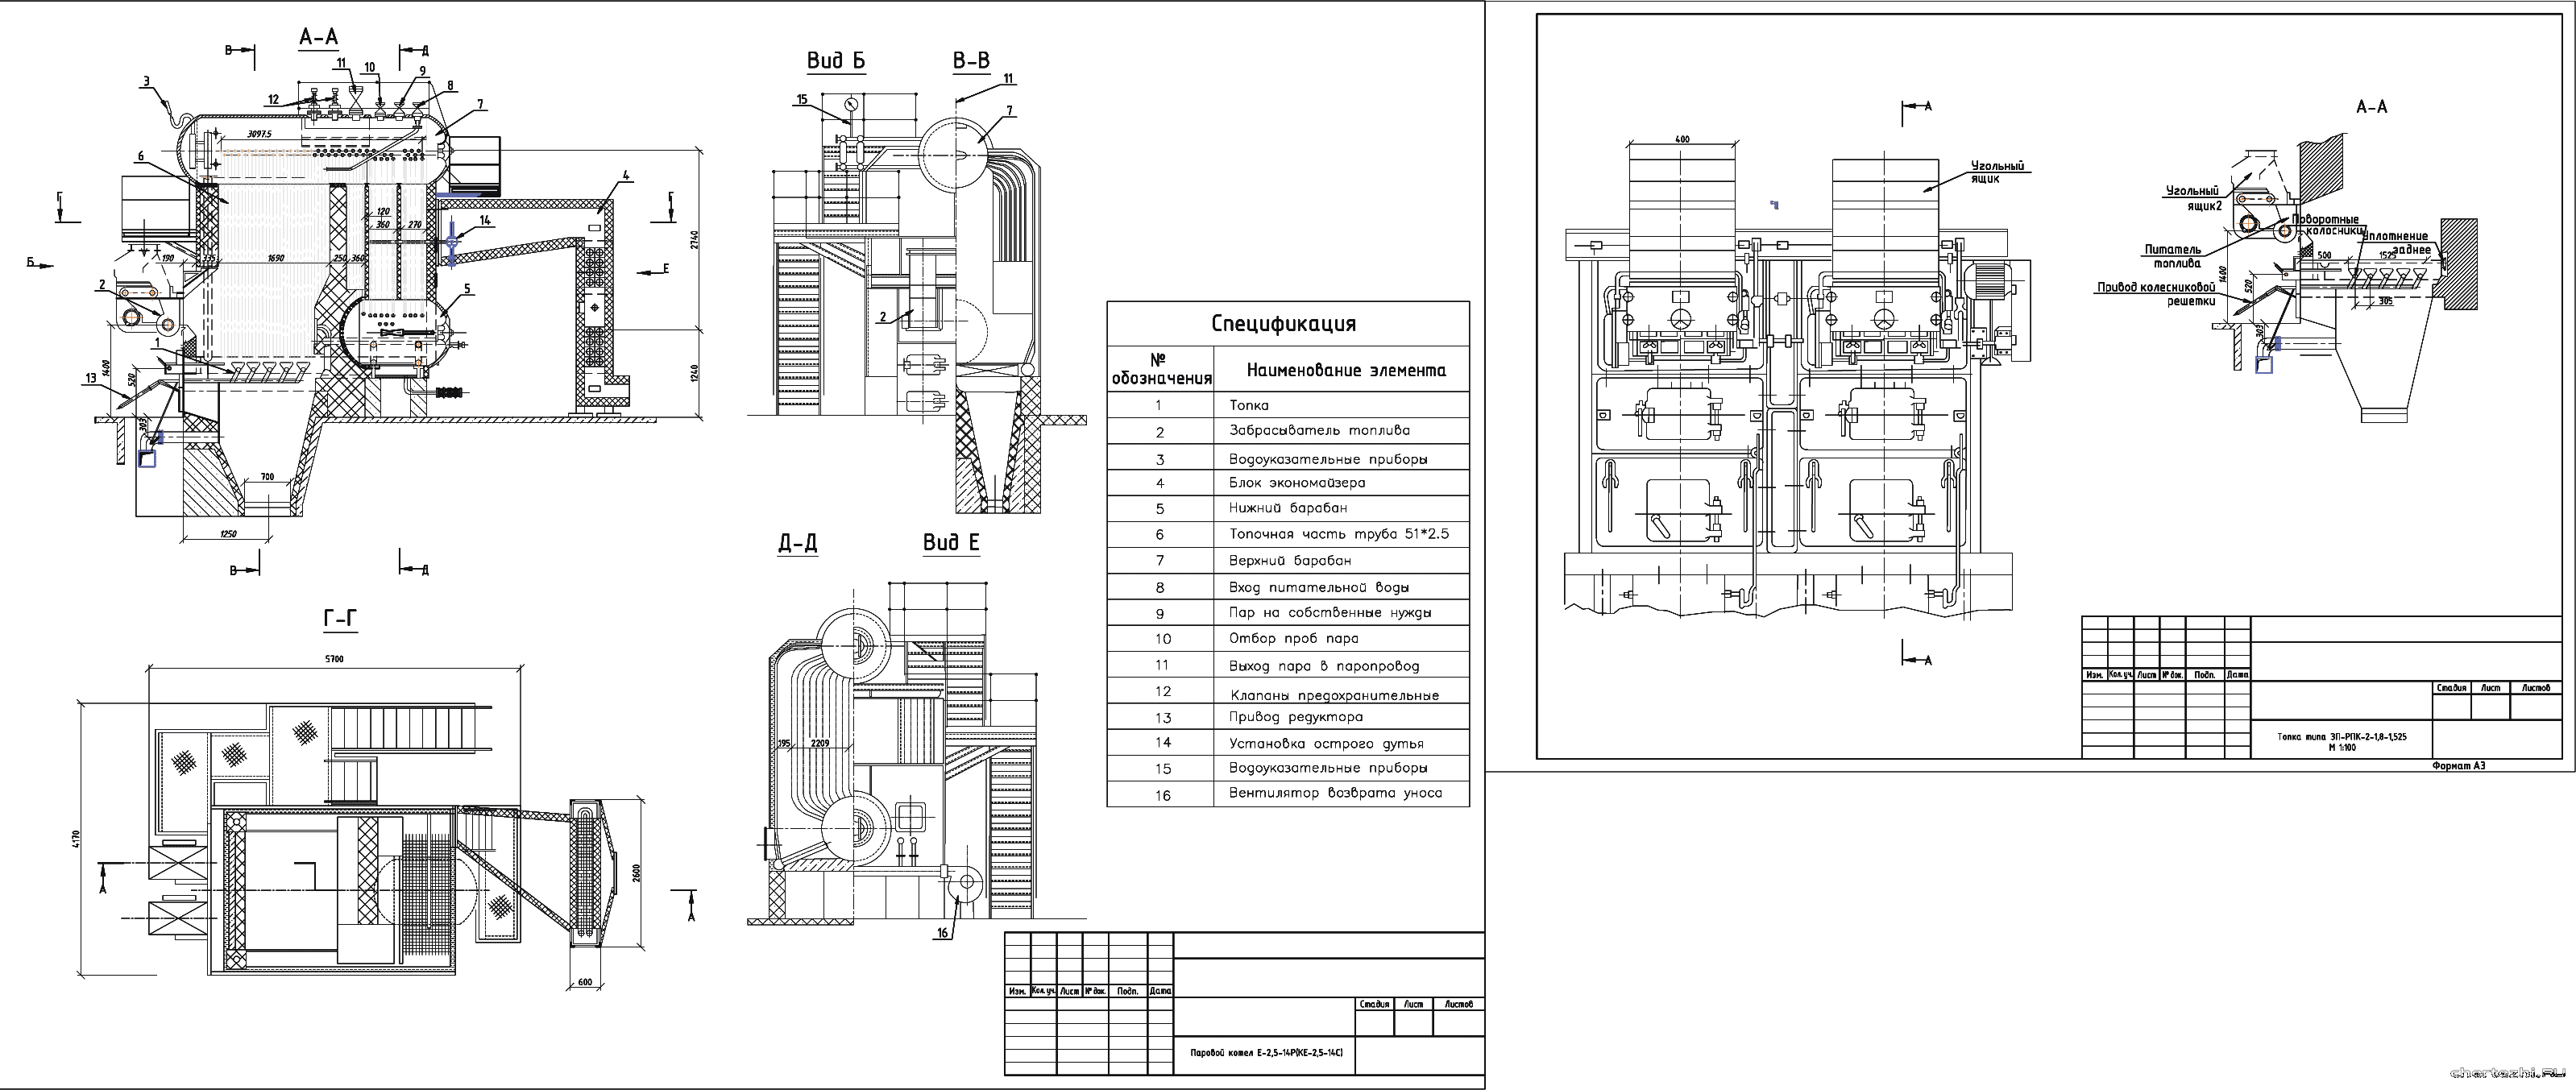 Курсовой проект - Паровой котел Е-2,5-14Р (КЕ-2,5-14С)